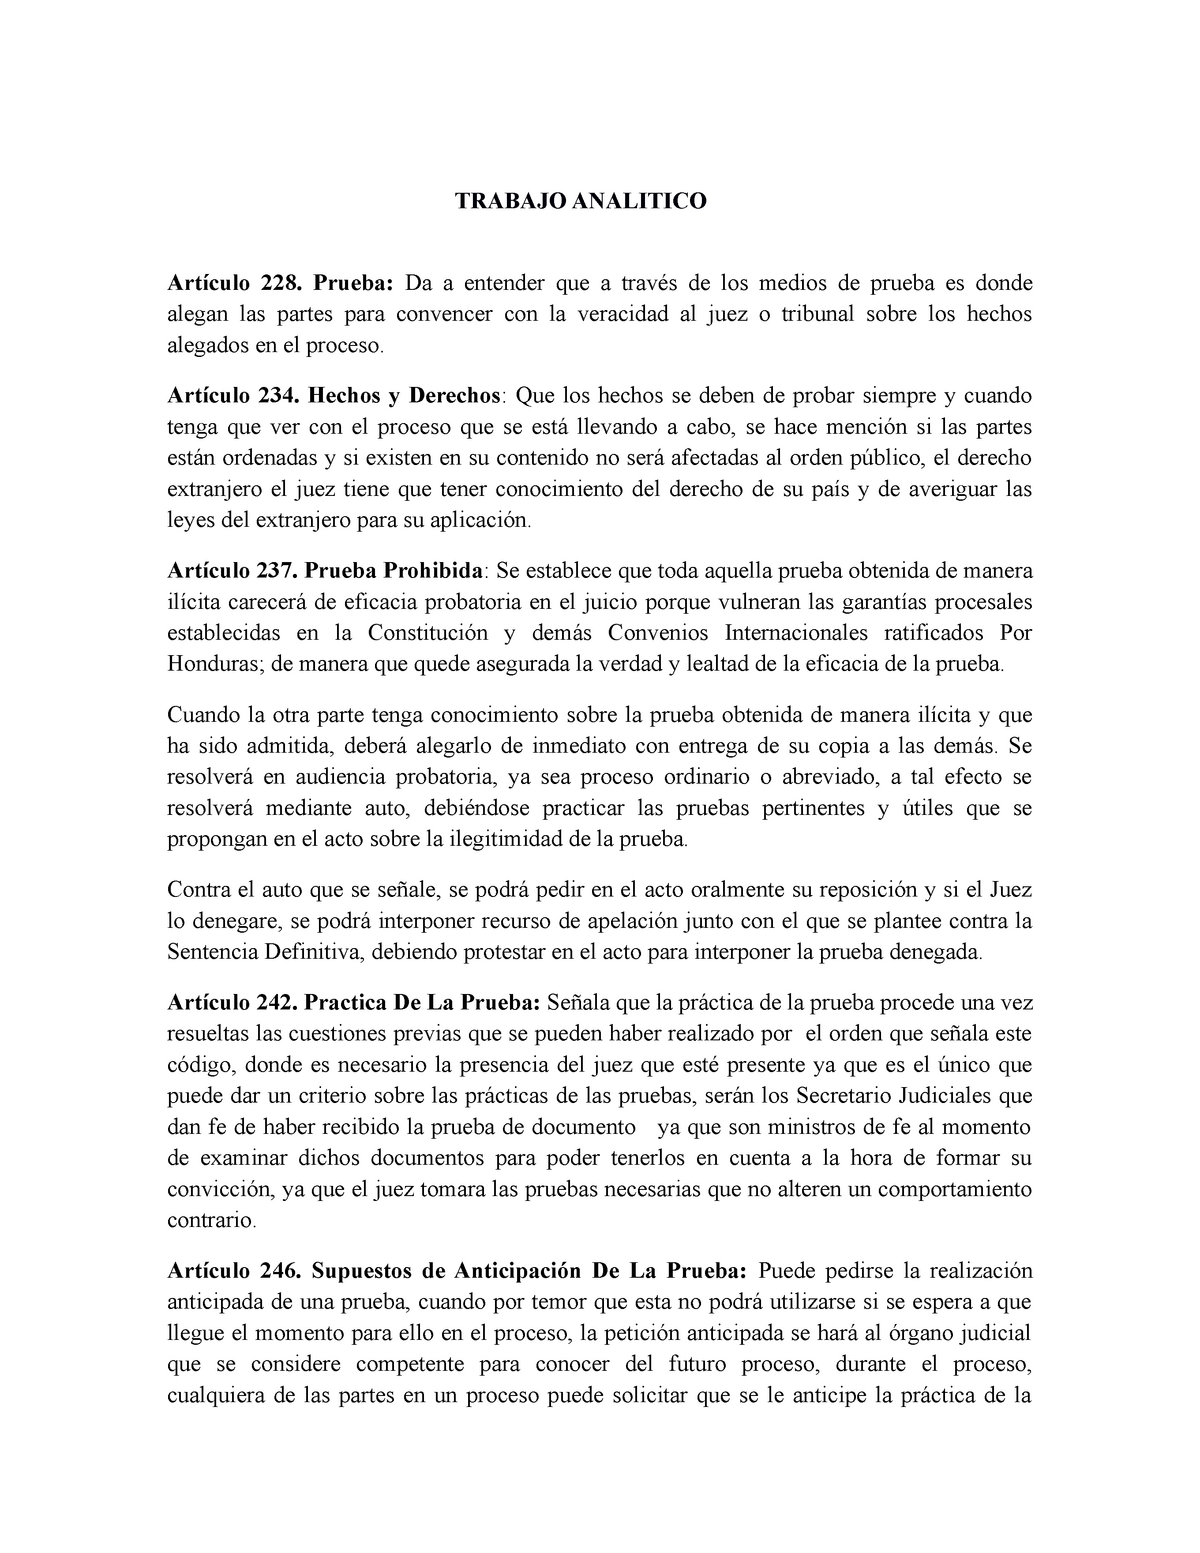 Trabajo Analitico - obligaciones y contratos - TRABAJO ANALITICO ...